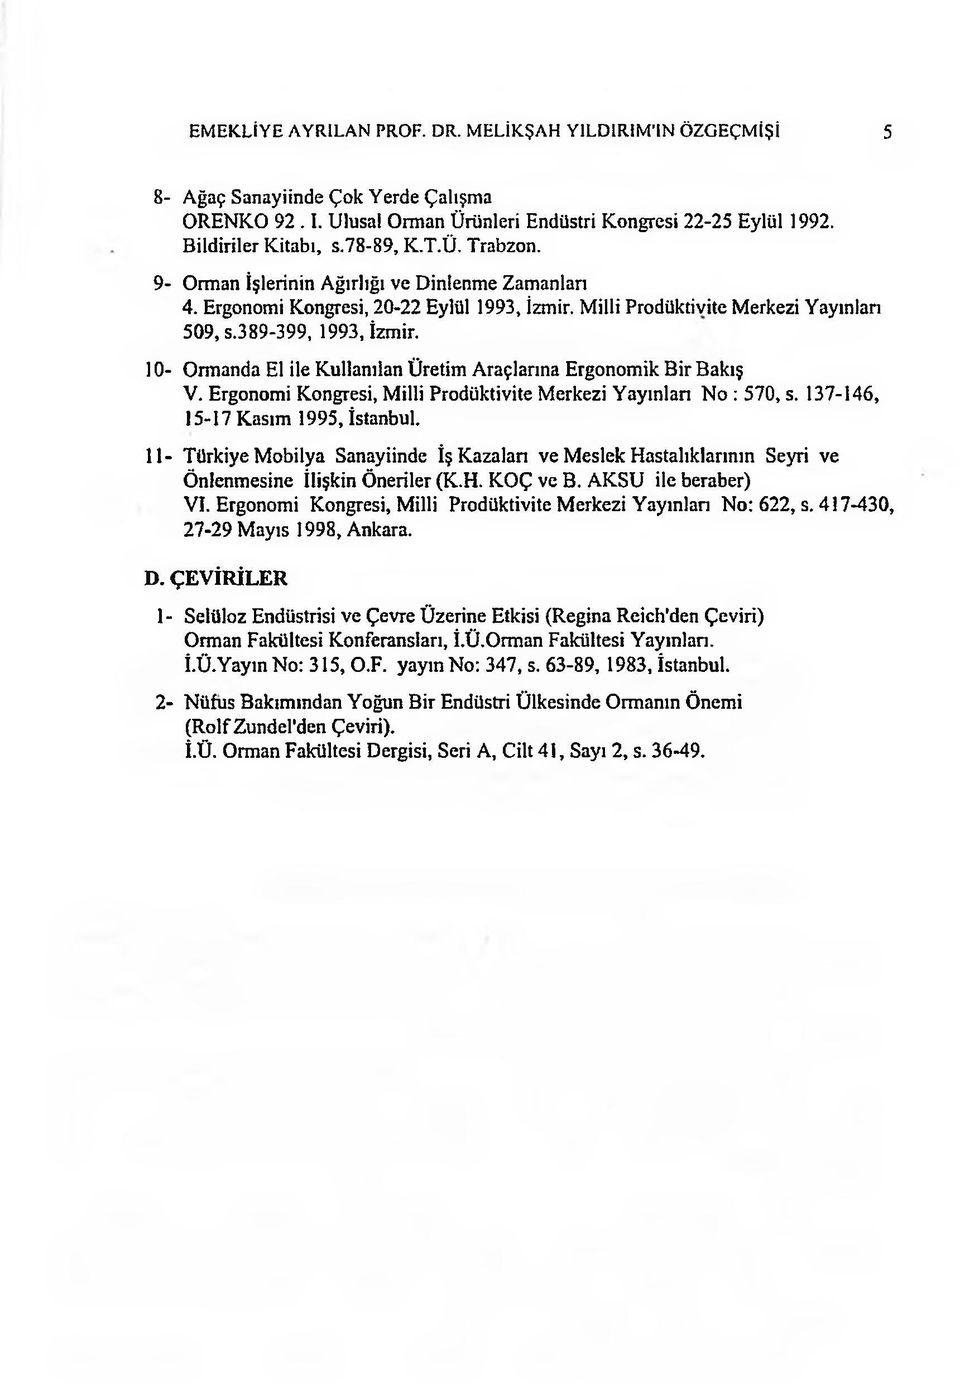 10- Ormanda El ile Kullanılan Üretim Araçlarına Ergonomik Bir Bakış V. Ergonomi Kongresi, Milli Prodüktivite Merkezi Yayınlan No : 570, s. 137-146, 15-17 Kasım 1995, İstanbul.